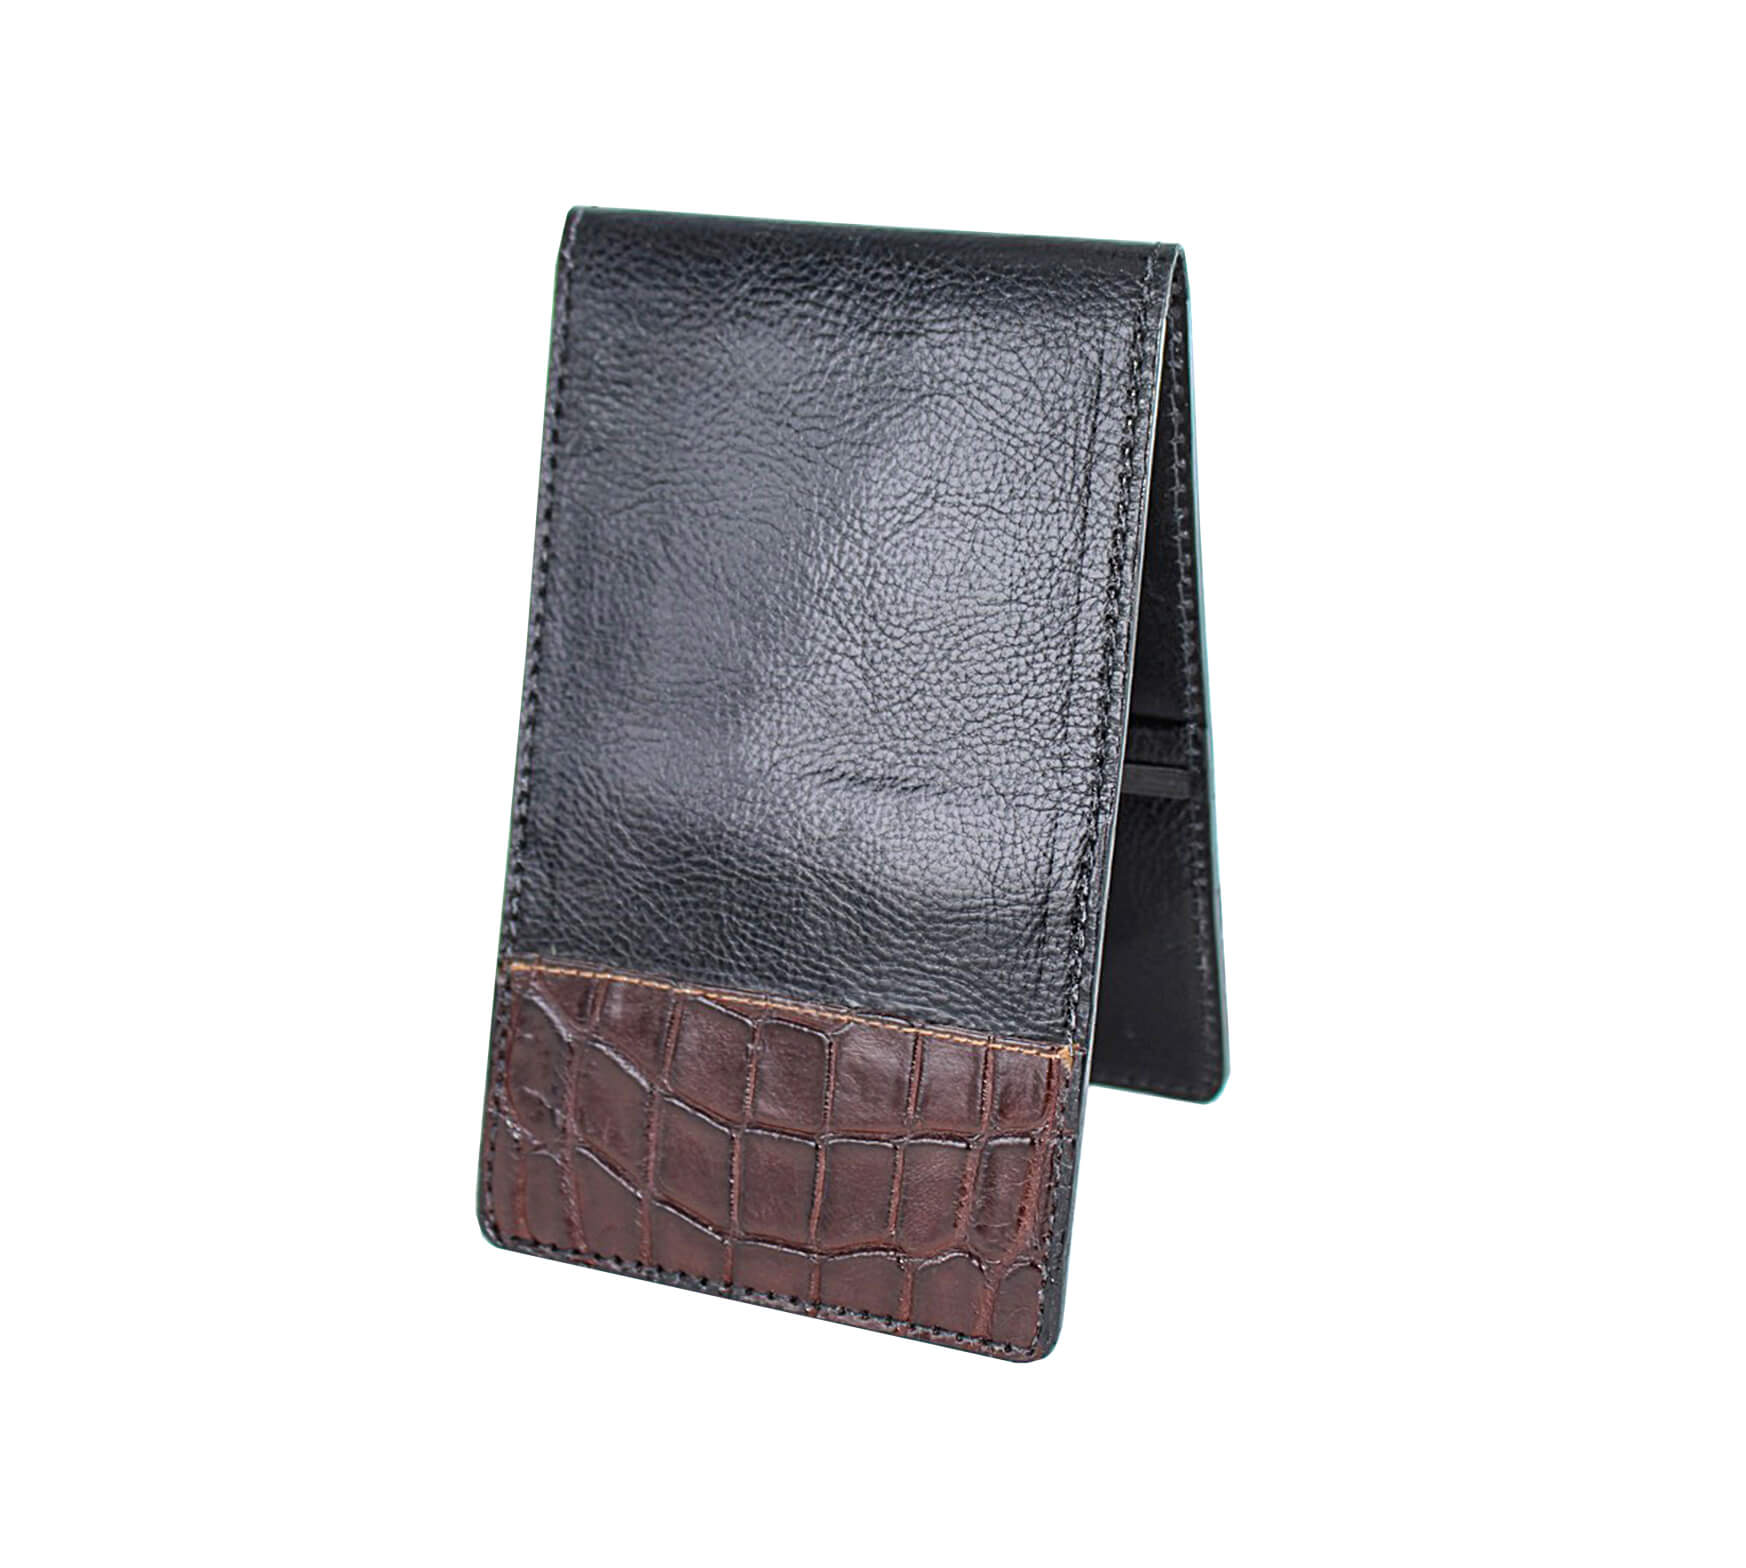 Gibbons Handmade - Yardage Books | Custom Leather With Alligator Tips ...